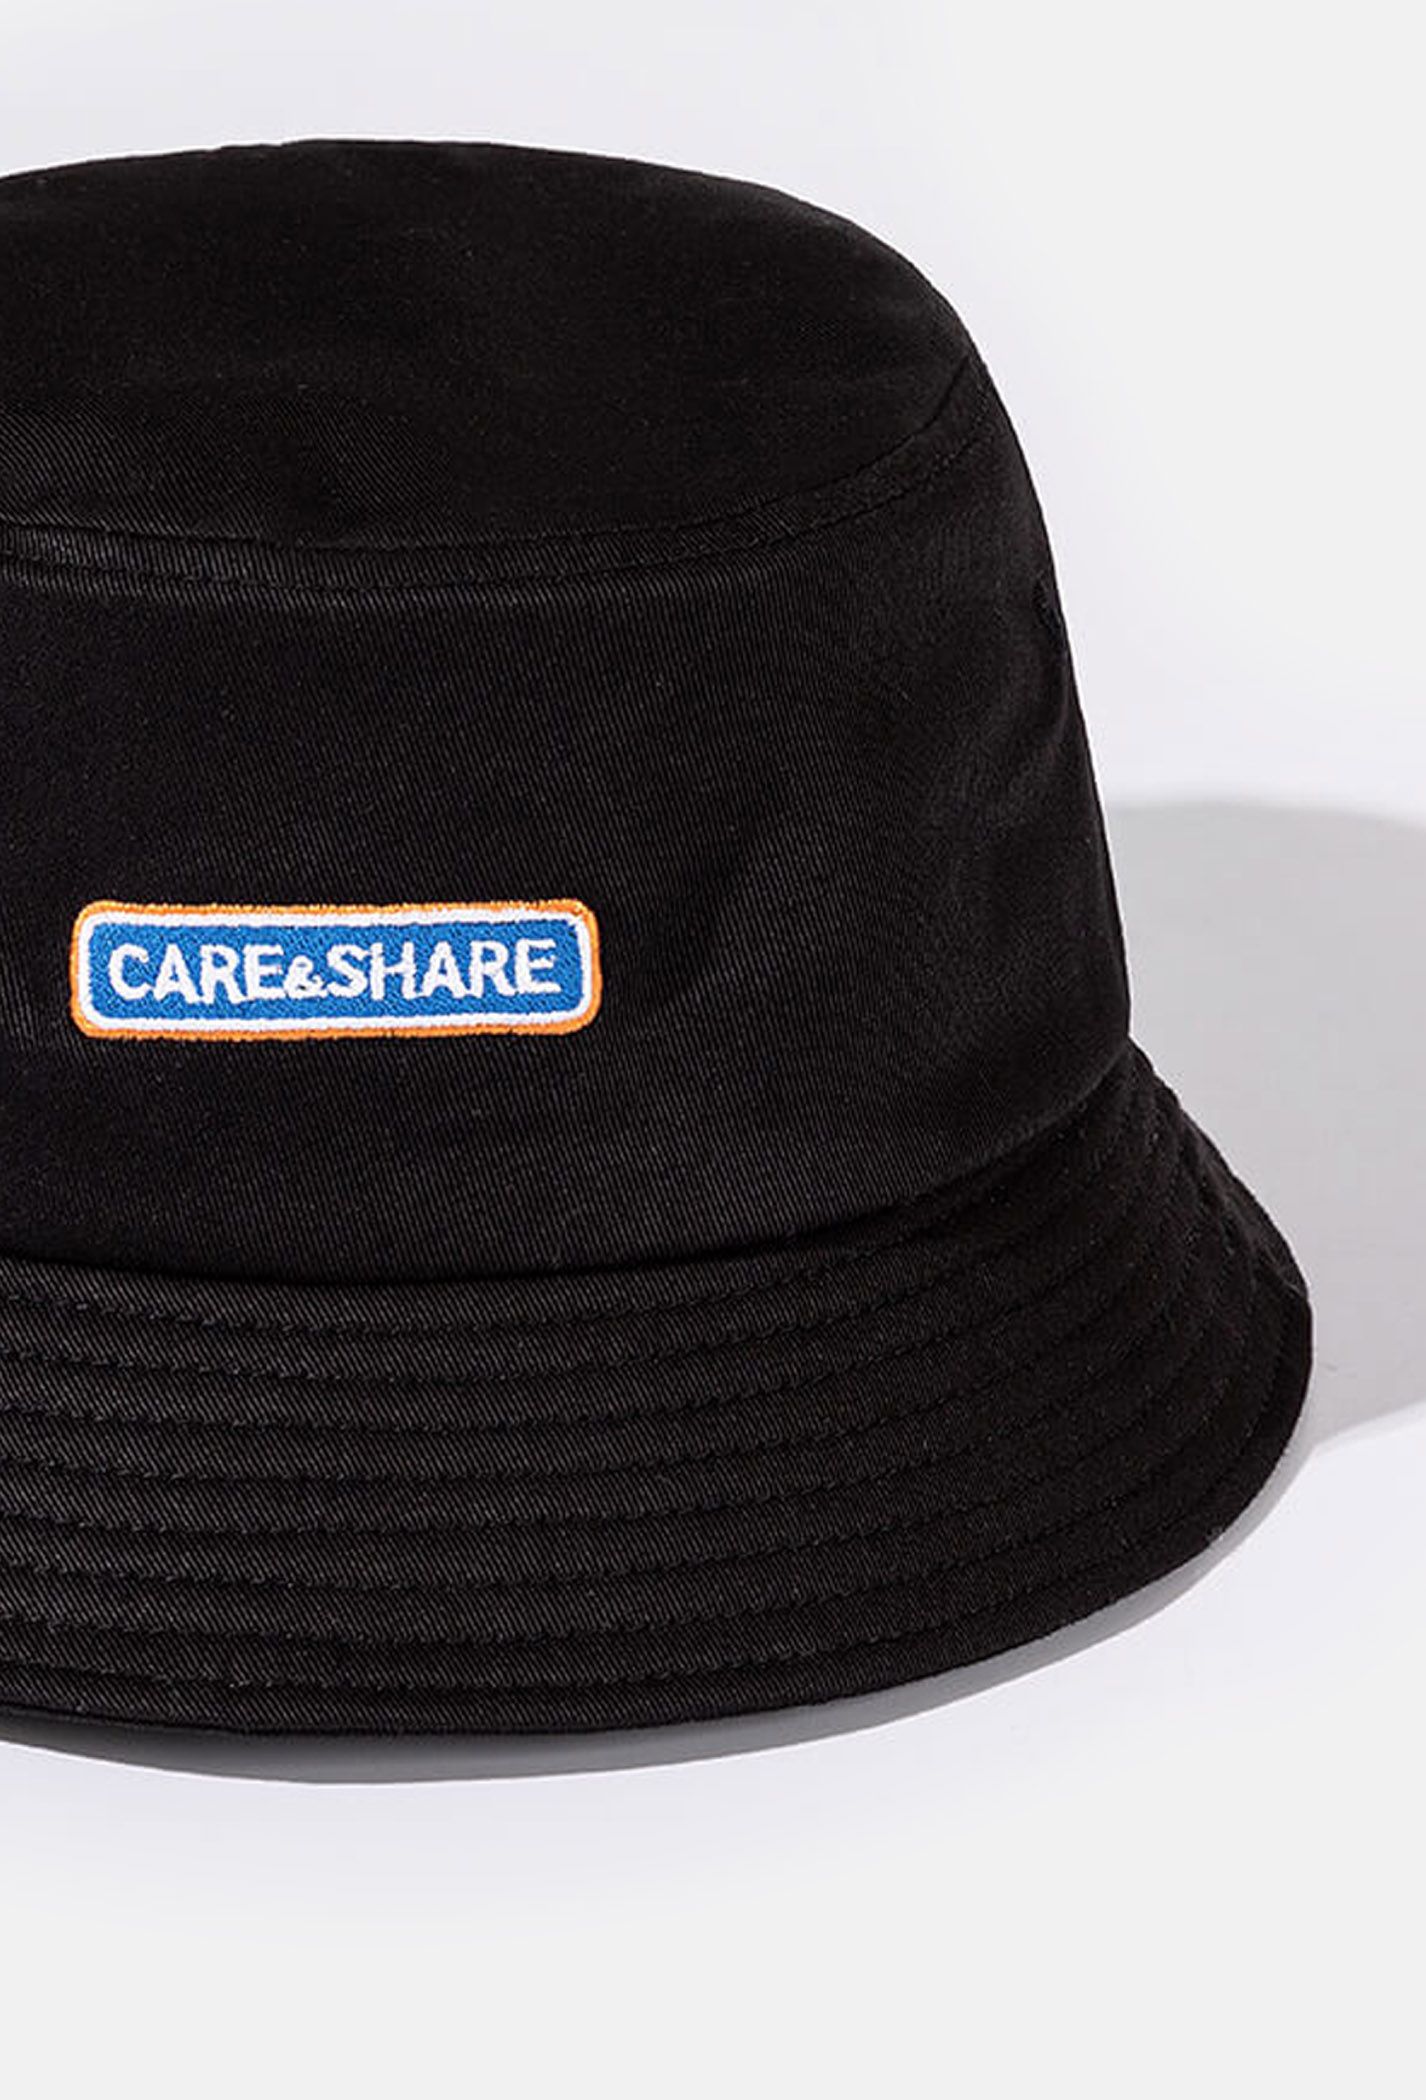 Mũ/Nón Bucket Hat thêu Care & Share Box - màu đen  2